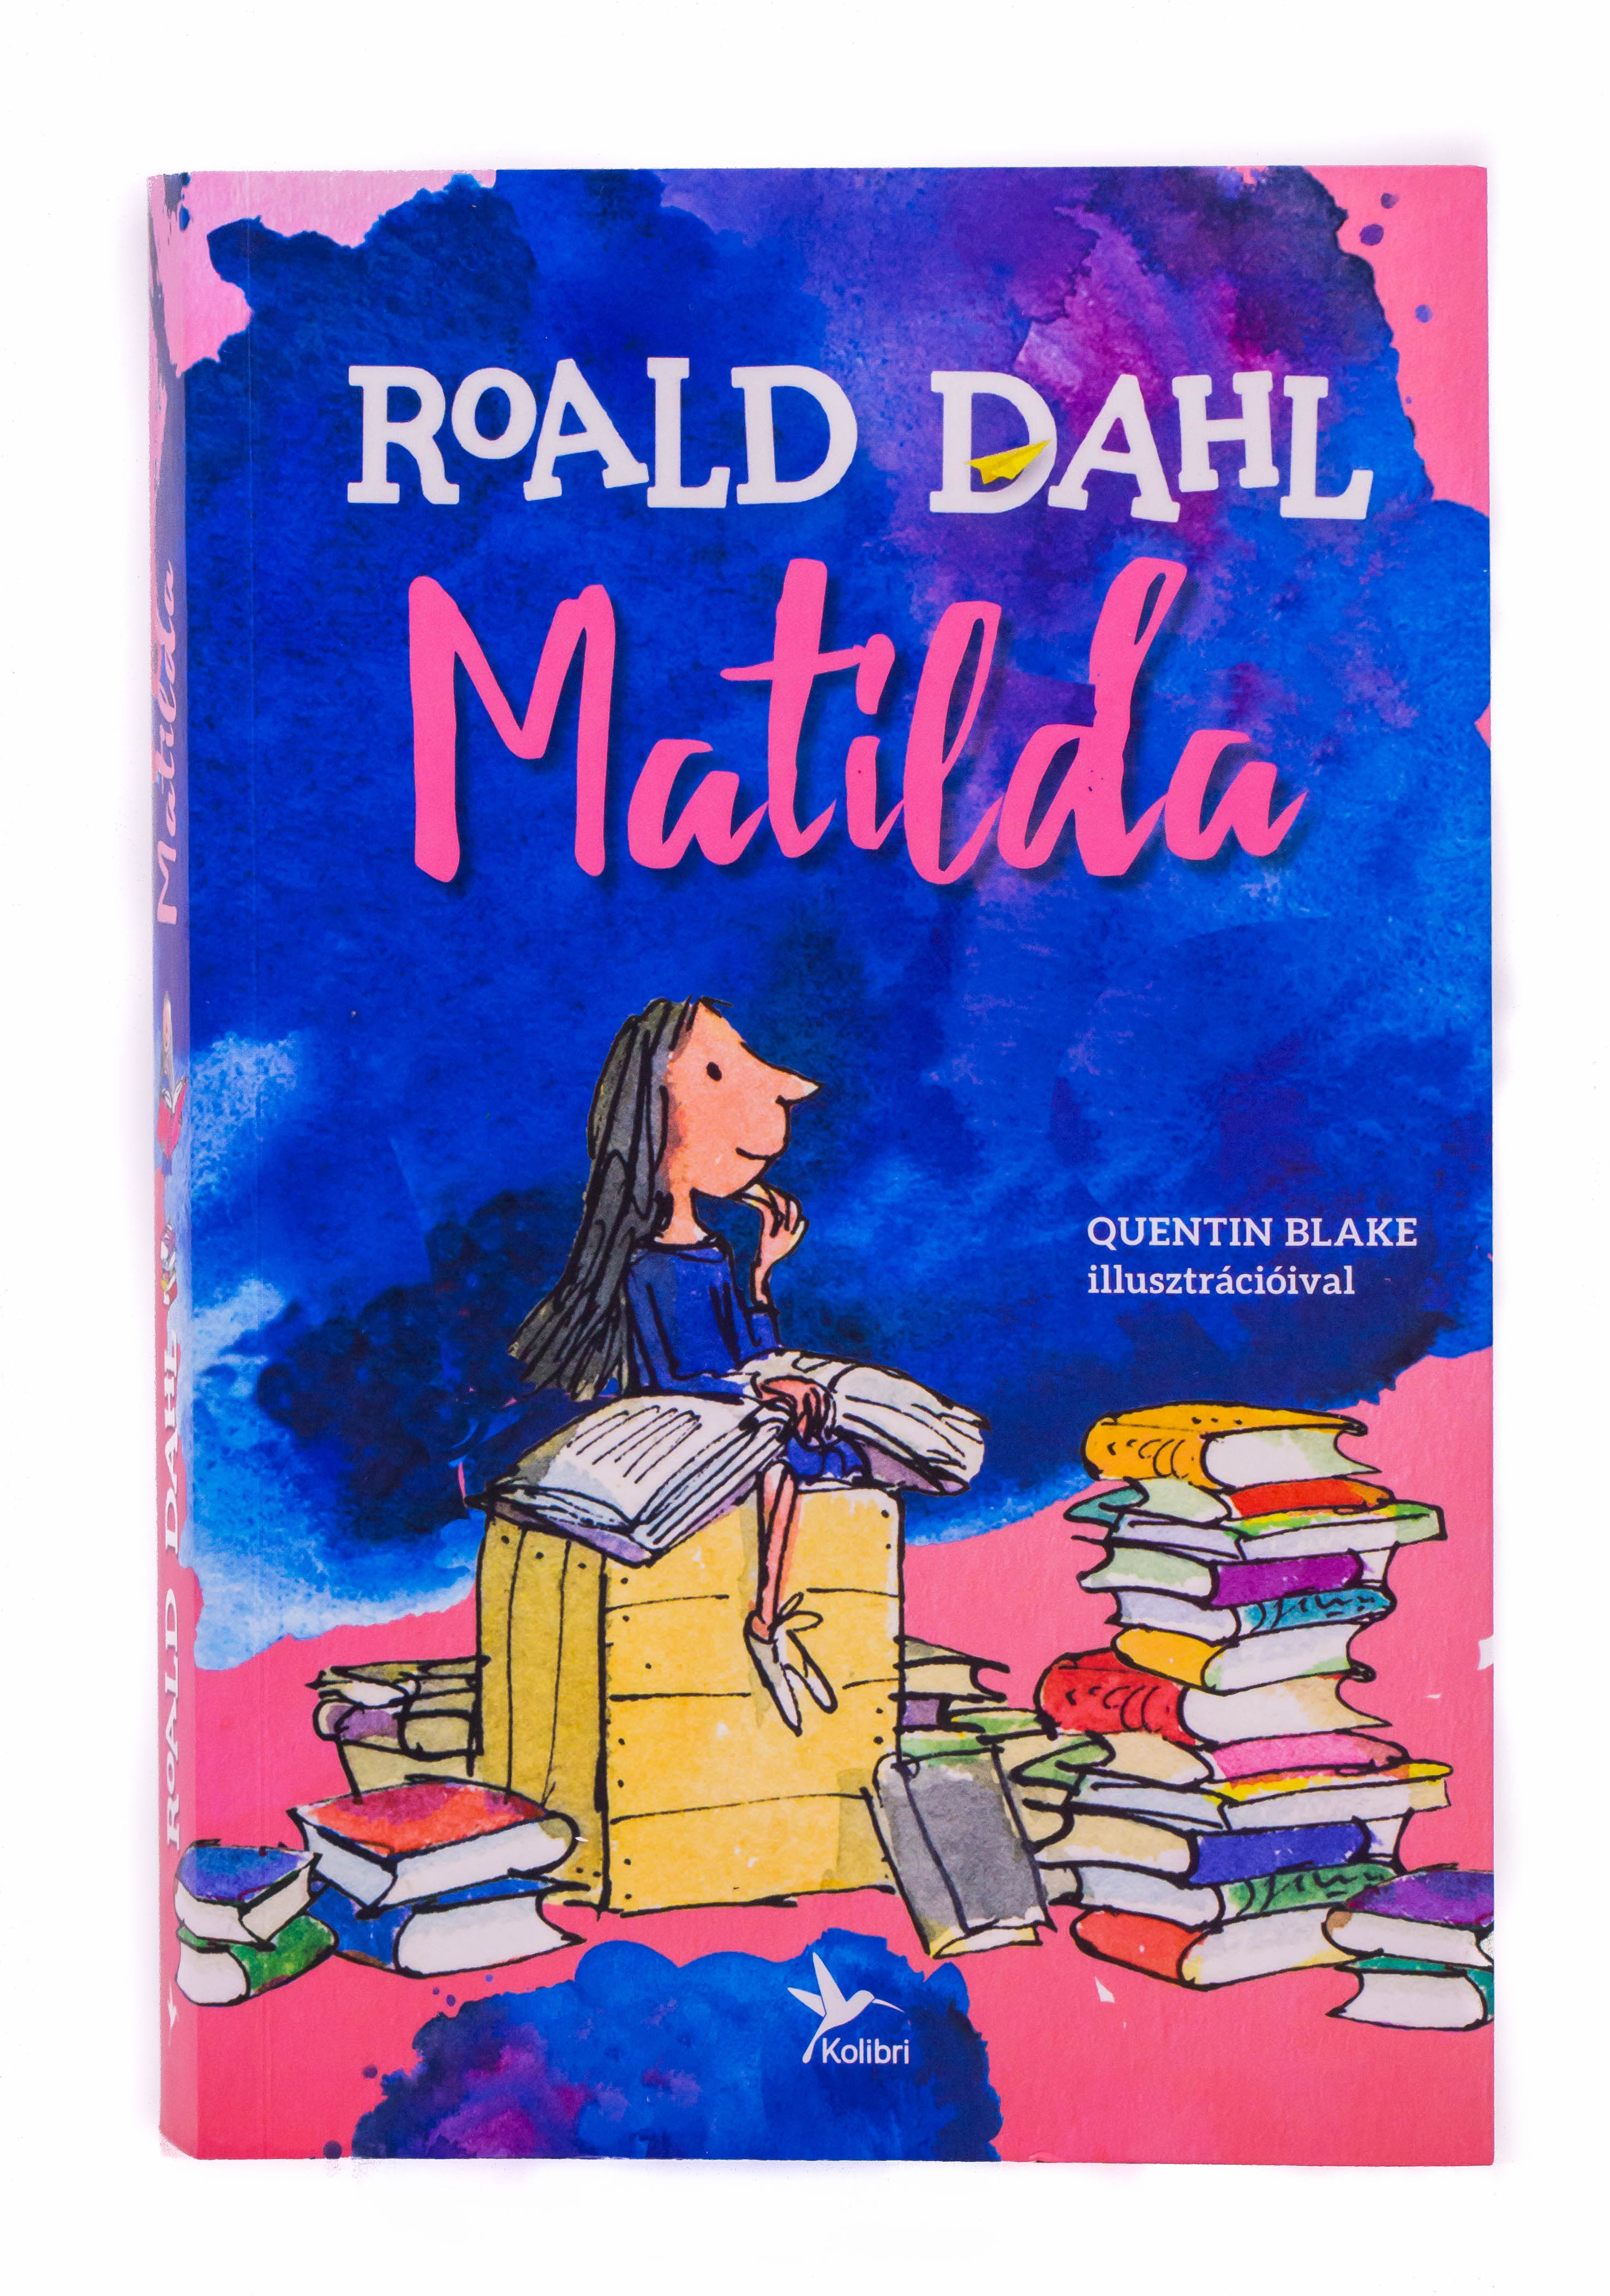 Роальд даль. Matilda by Roald Dahl читать на английском. Roald dahl s matilda